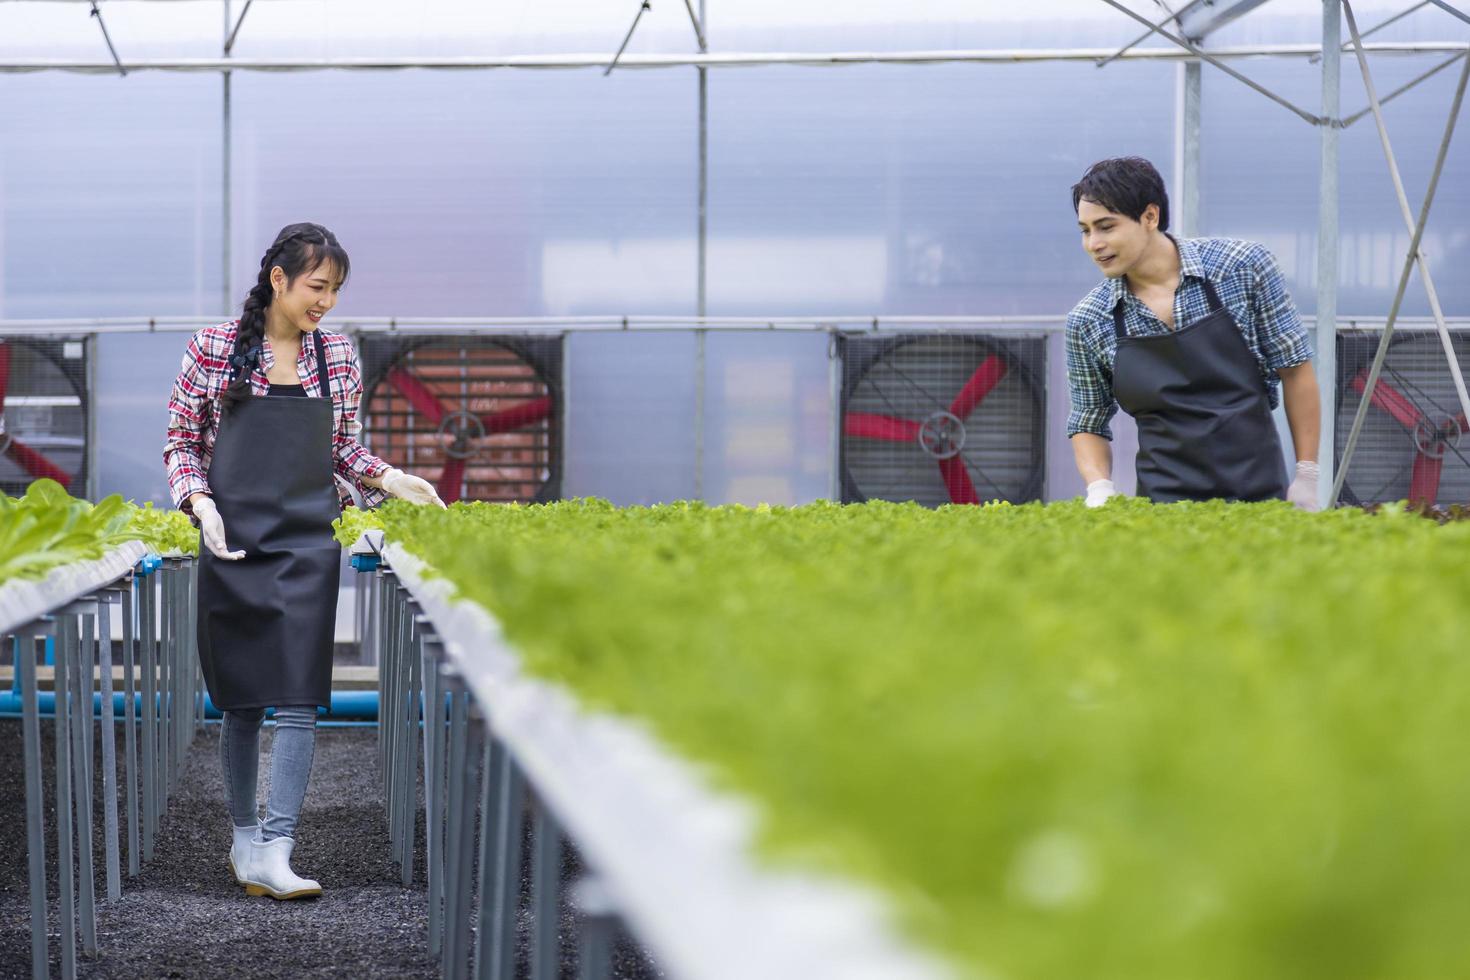 agricultores locales asiáticos que cultivan su propia ensalada de lechuga de roble verde en el invernadero utilizando un enfoque orgánico del sistema de agua hidropónico para empresas familiares foto